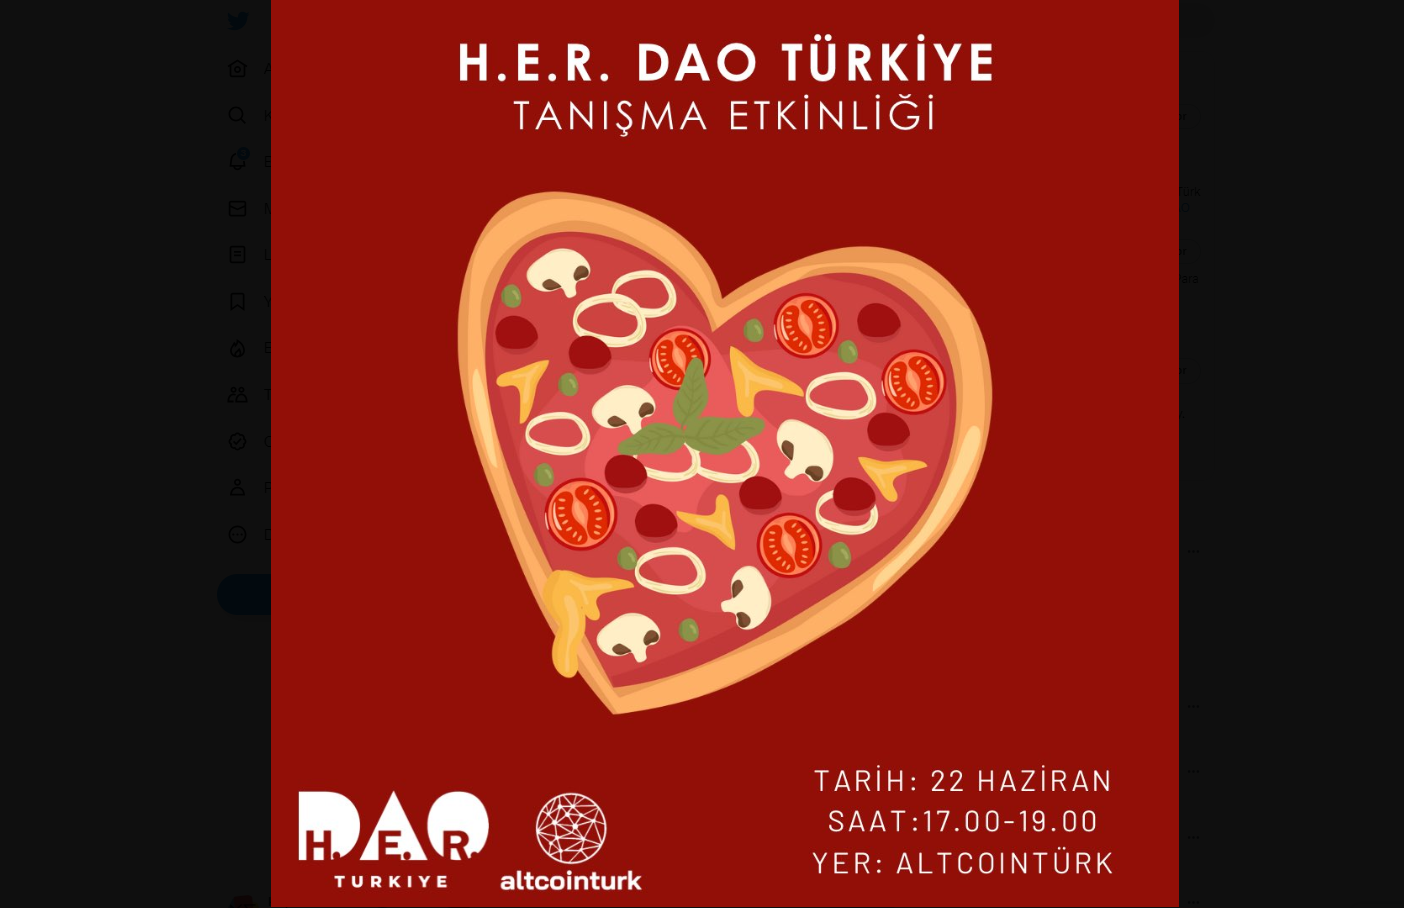 H.E.R. DAO Türkiye’nin tanışma etkinliği için geri sayım başladı